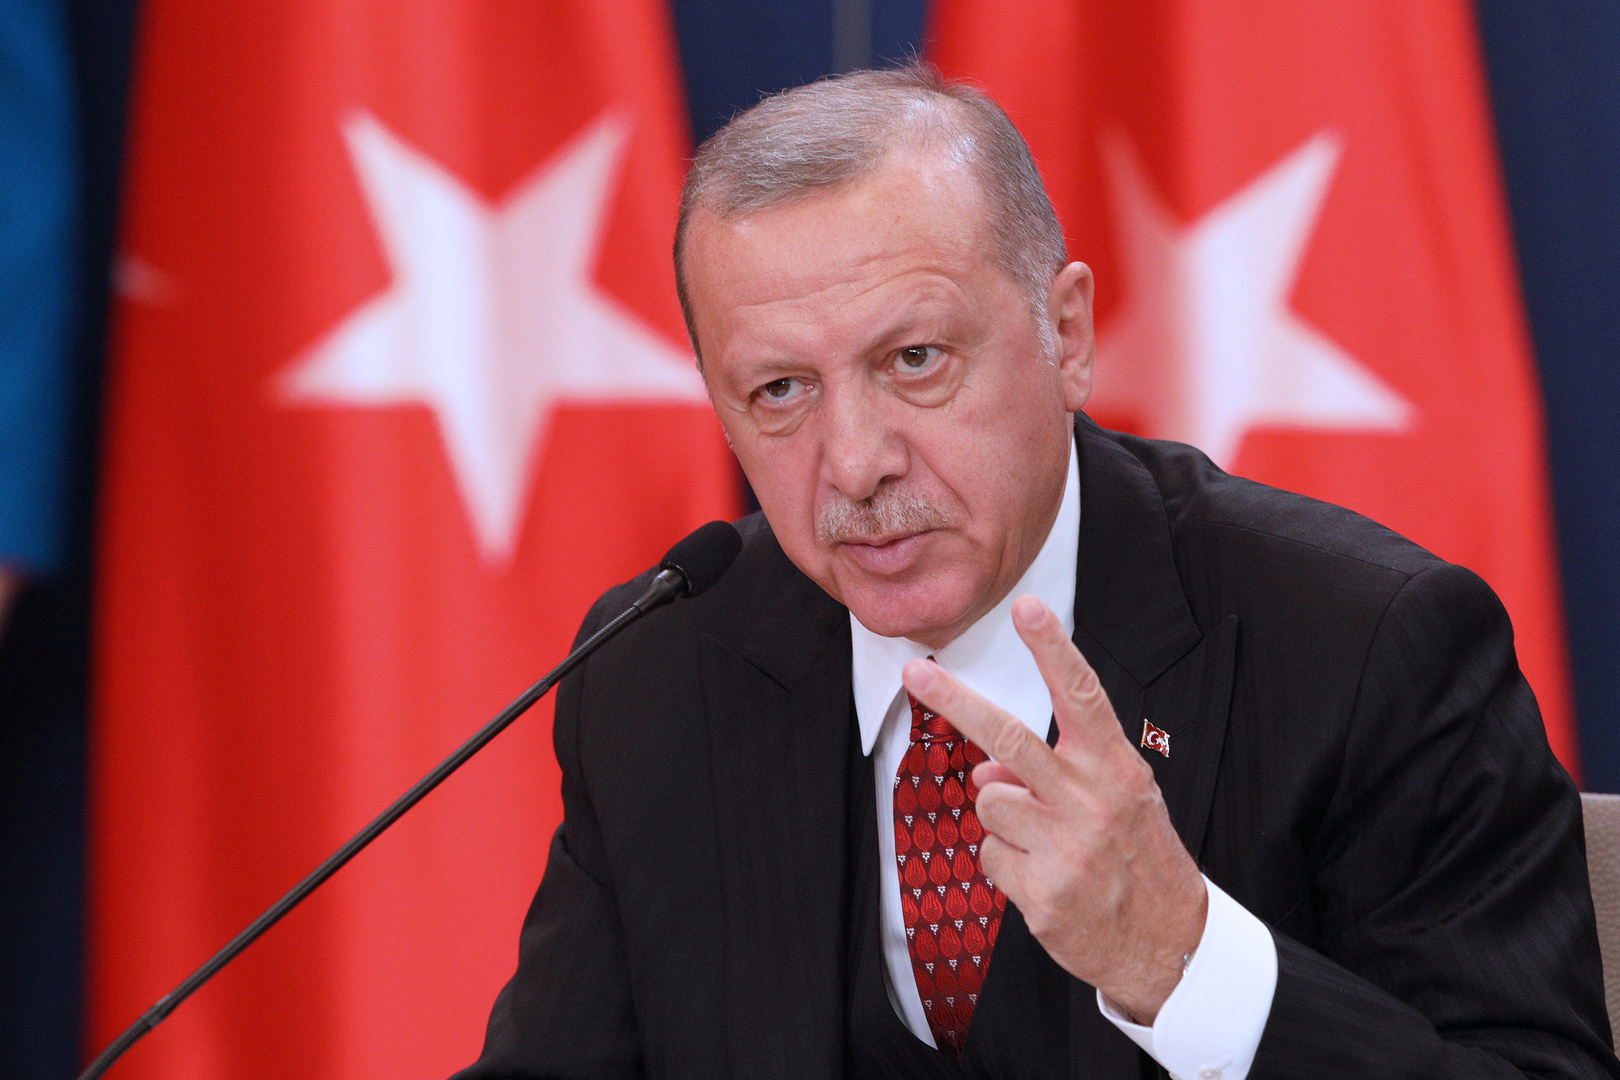 مستشار الرئيس التركي يكشف تفاصيل اتصال هاتفي بين أردوغان وماكرون بشأن ليبيا